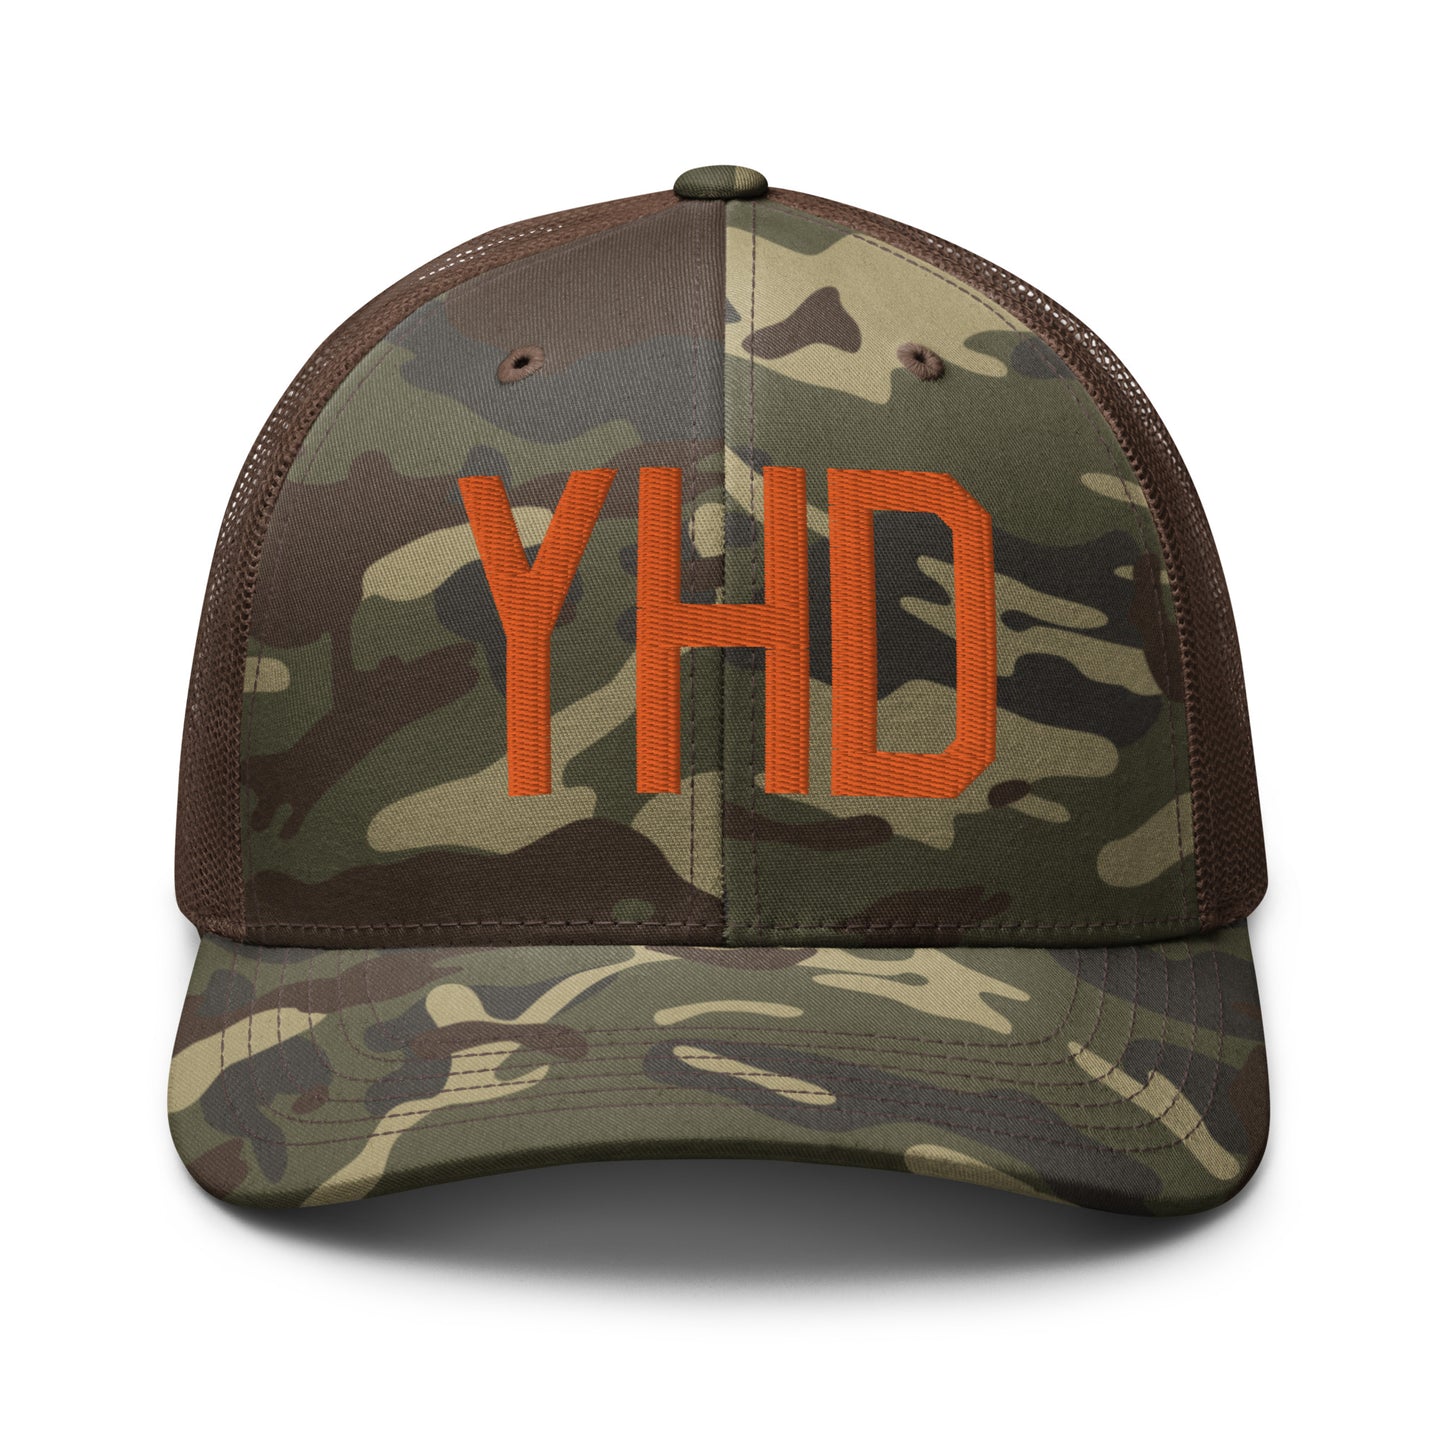 Airport Code Camouflage Trucker Hat - Orange • YHD Dryden • YHM Designs - Image 13